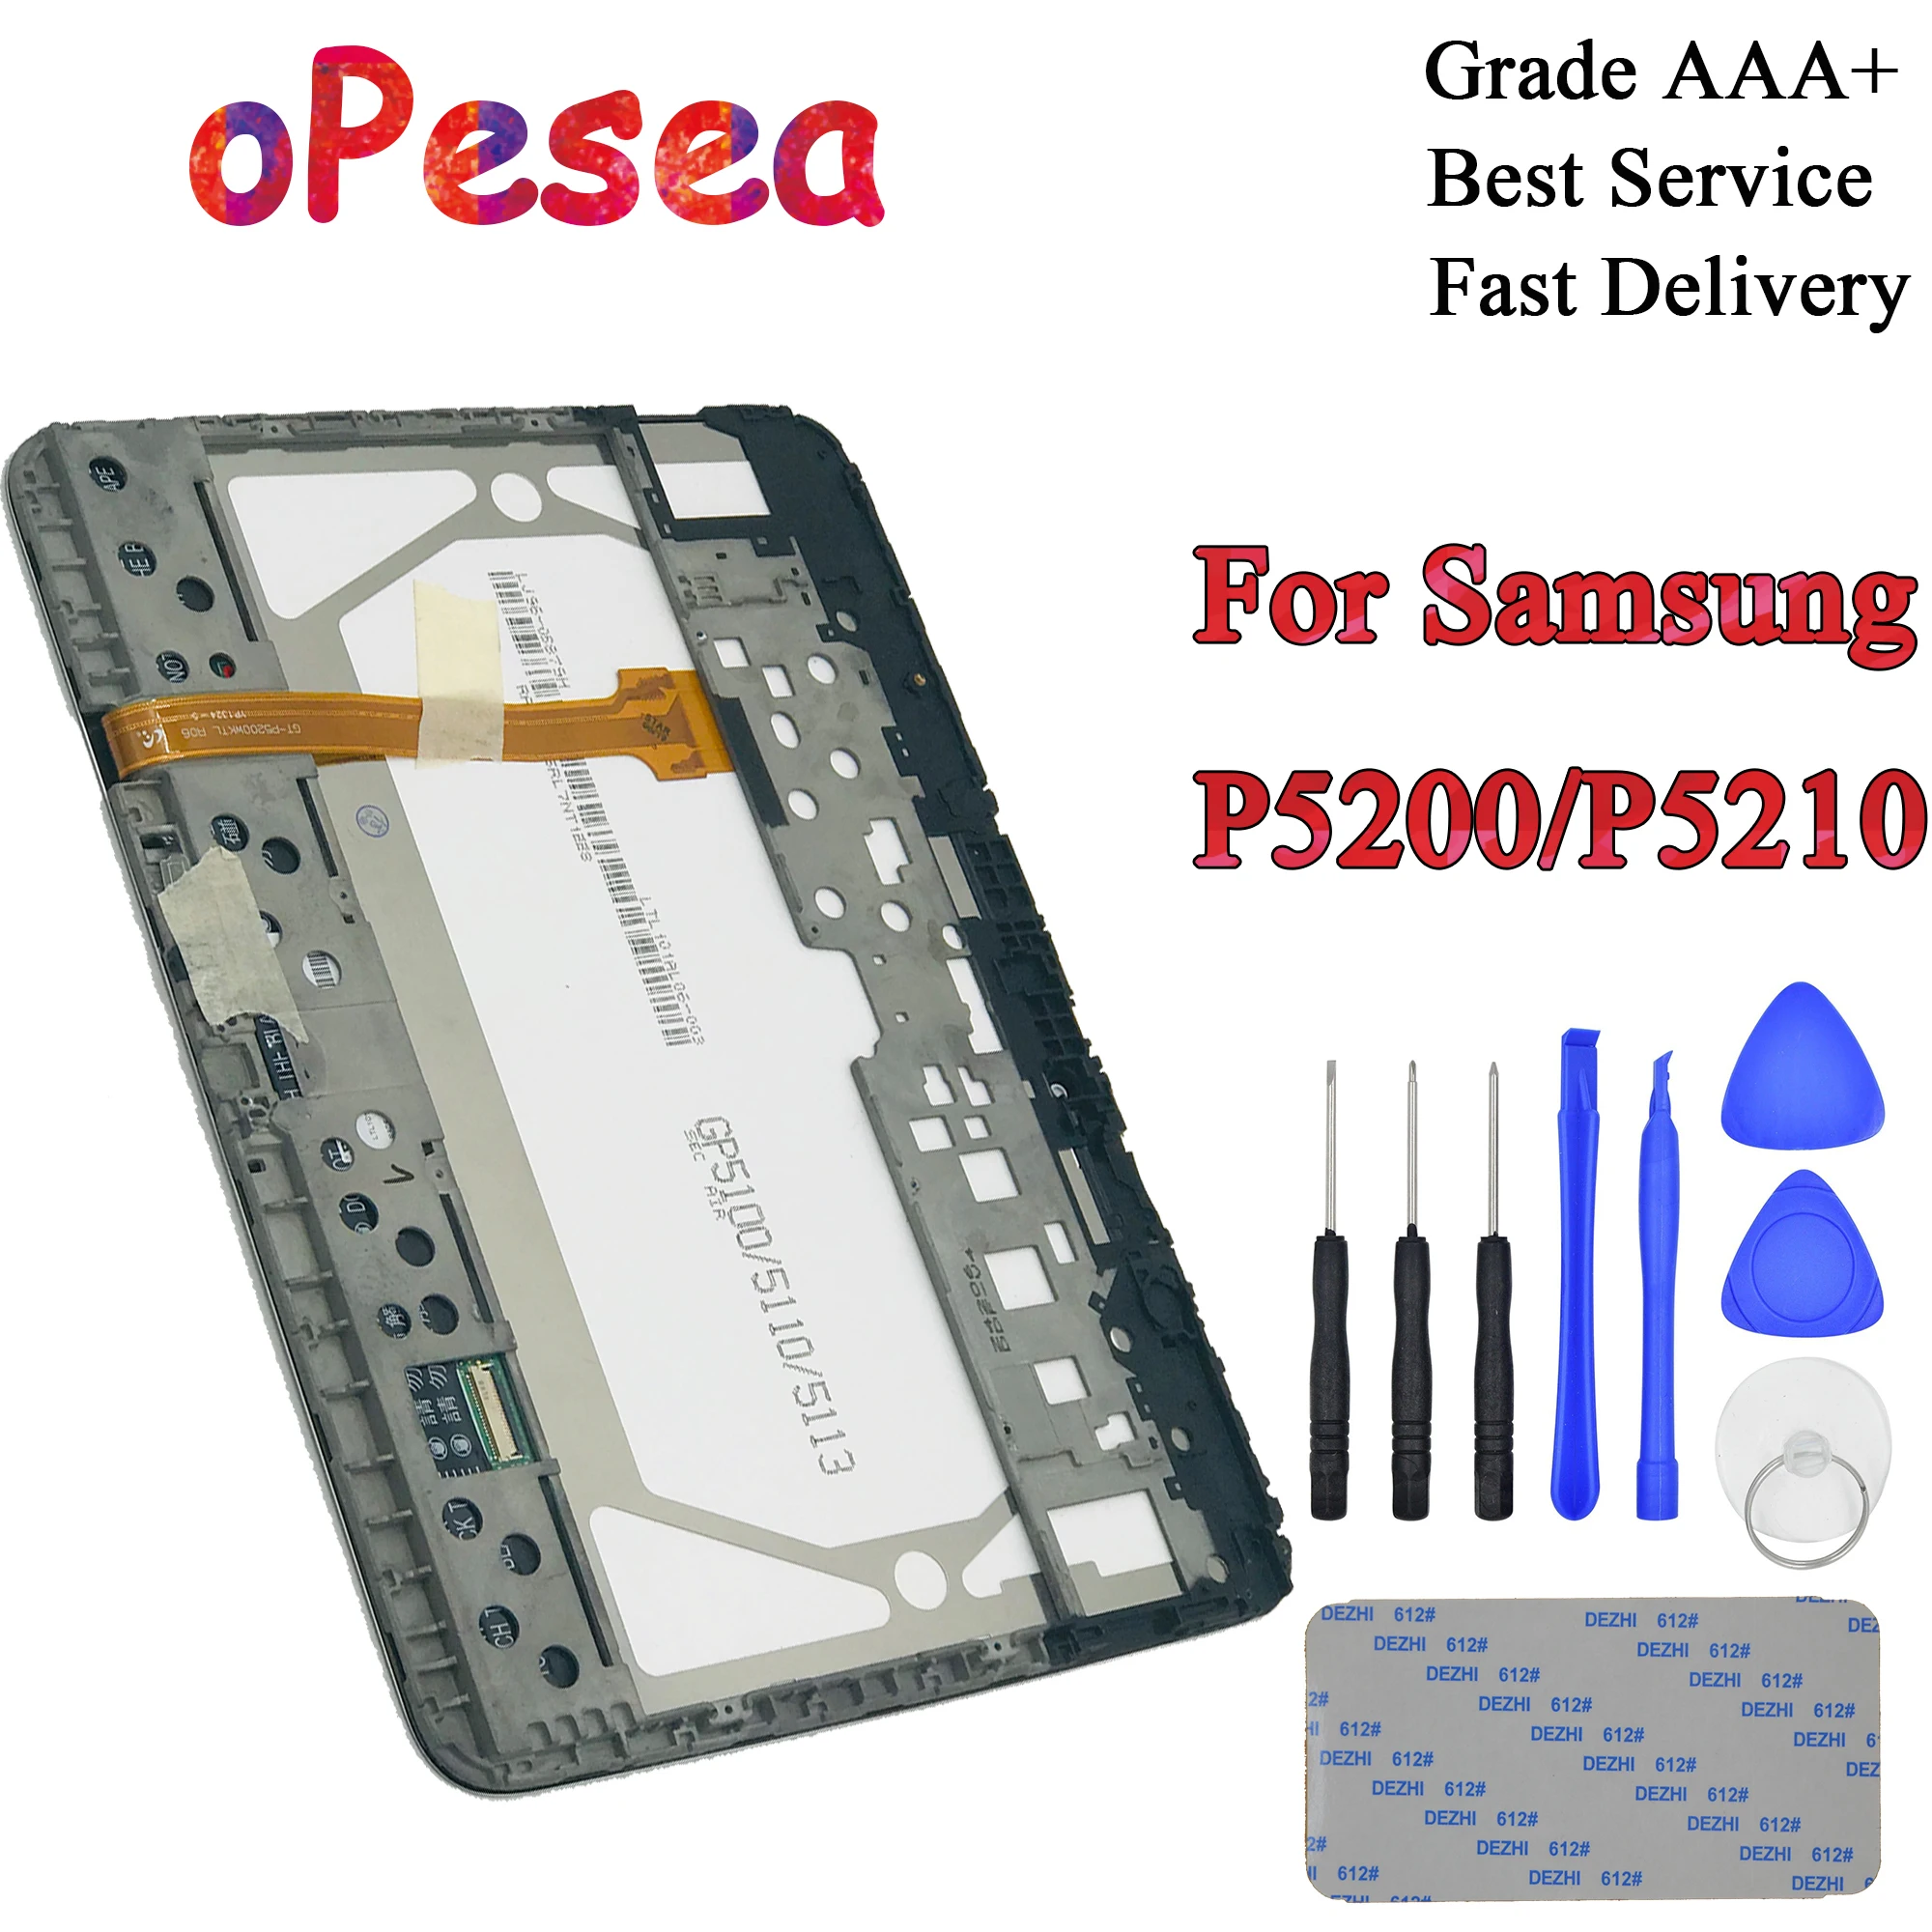 OPesea для Samsung Galaxy Tab 3 GT-P5200 P5210 P5200 планшетный ПК с сенсорным экраном дигитайзер ЖК-дисплей панель в сборе с рамкой